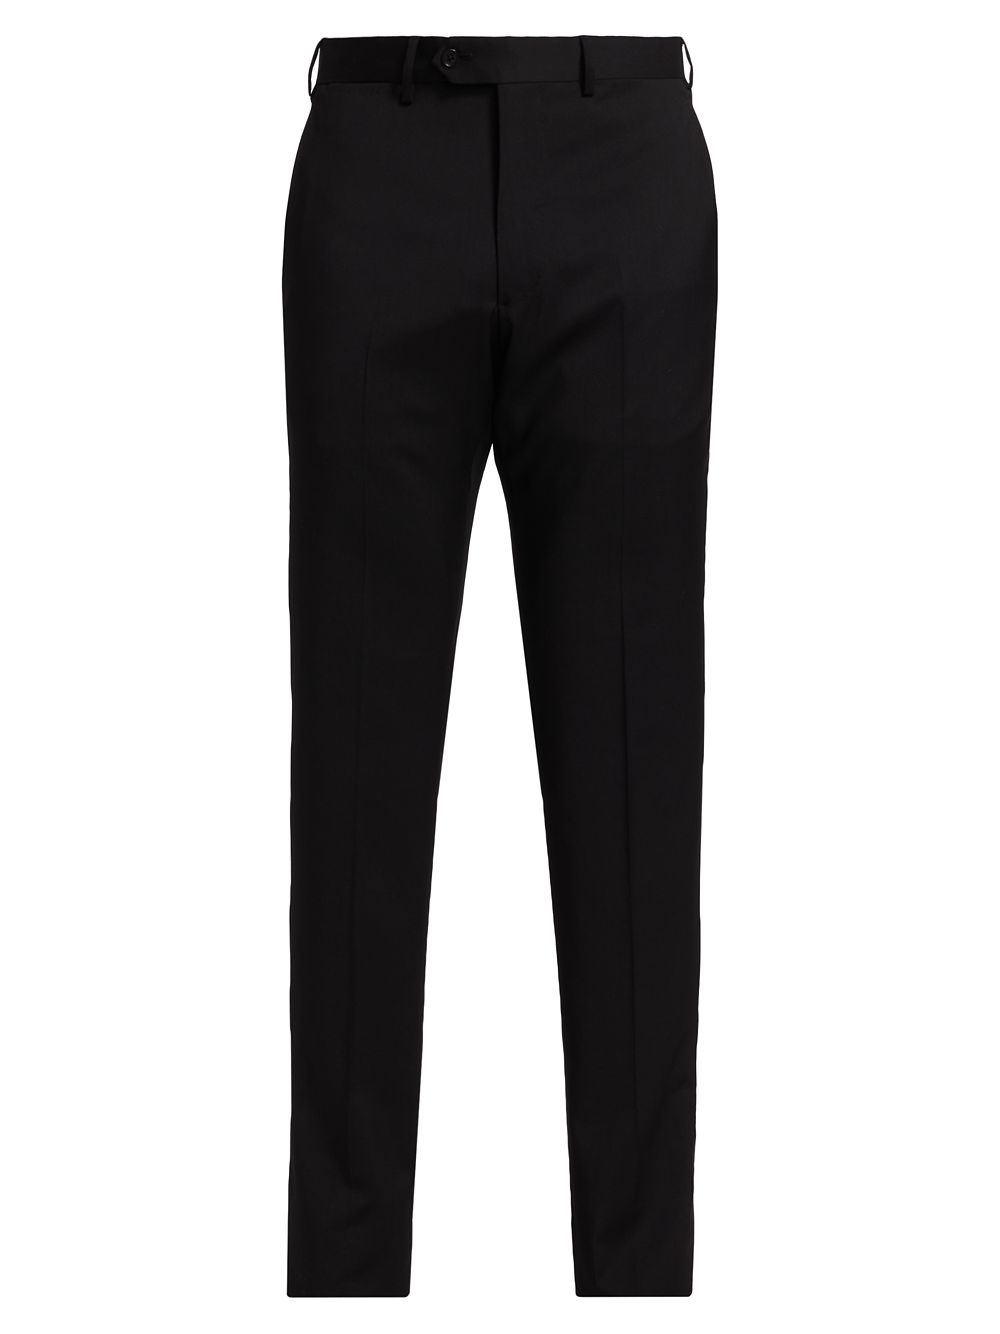 Классические шерстяные брюки Emporio Armani, черный шерстяные брюки смокинги emporio armani черный